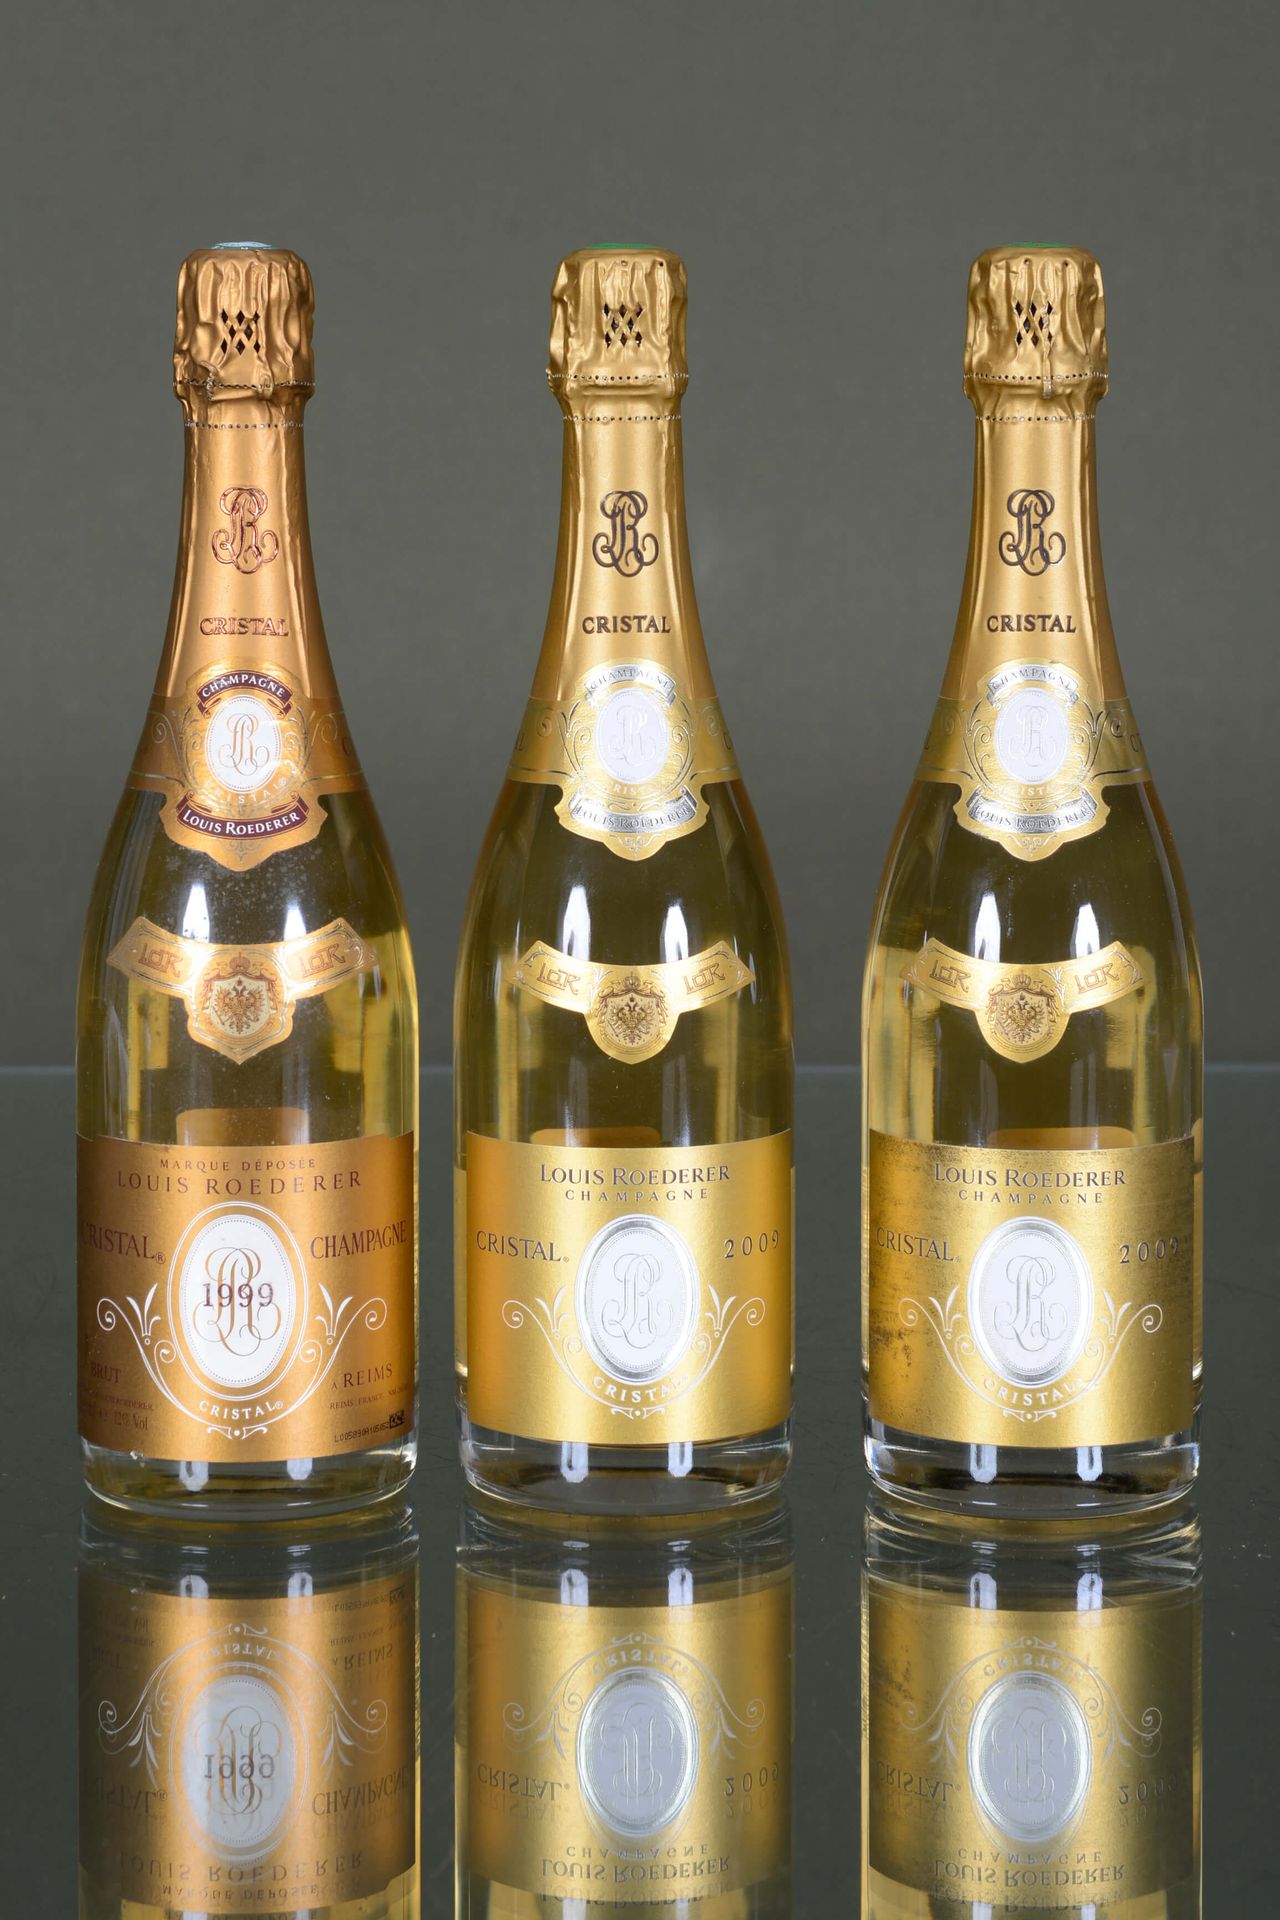 Champagne Cristal Roederer 1 bottle, 1999 + 2 bottles, 2009

Condition report : &hellip;